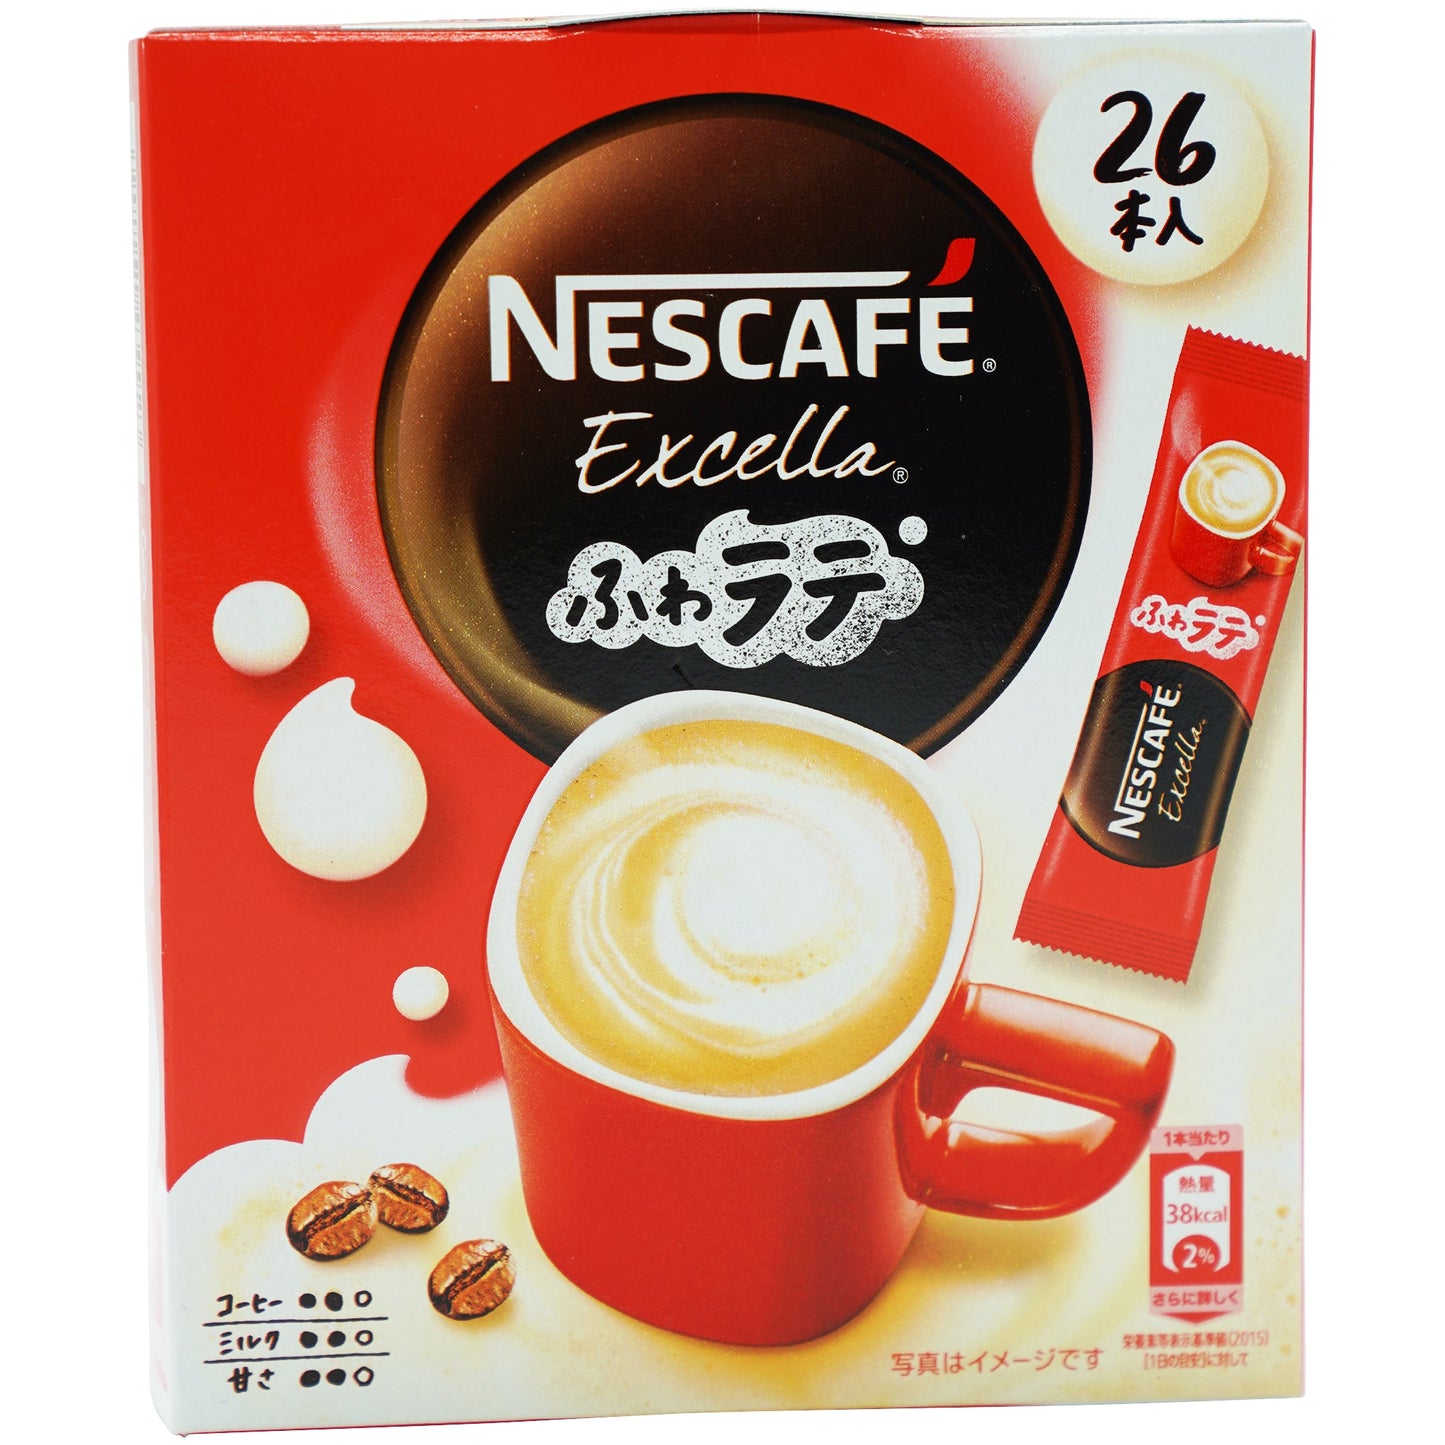 Nestle Nescafe Fuwa Latte Excella 6.88 oz - Tokyo Central - Coffee - Nestle -